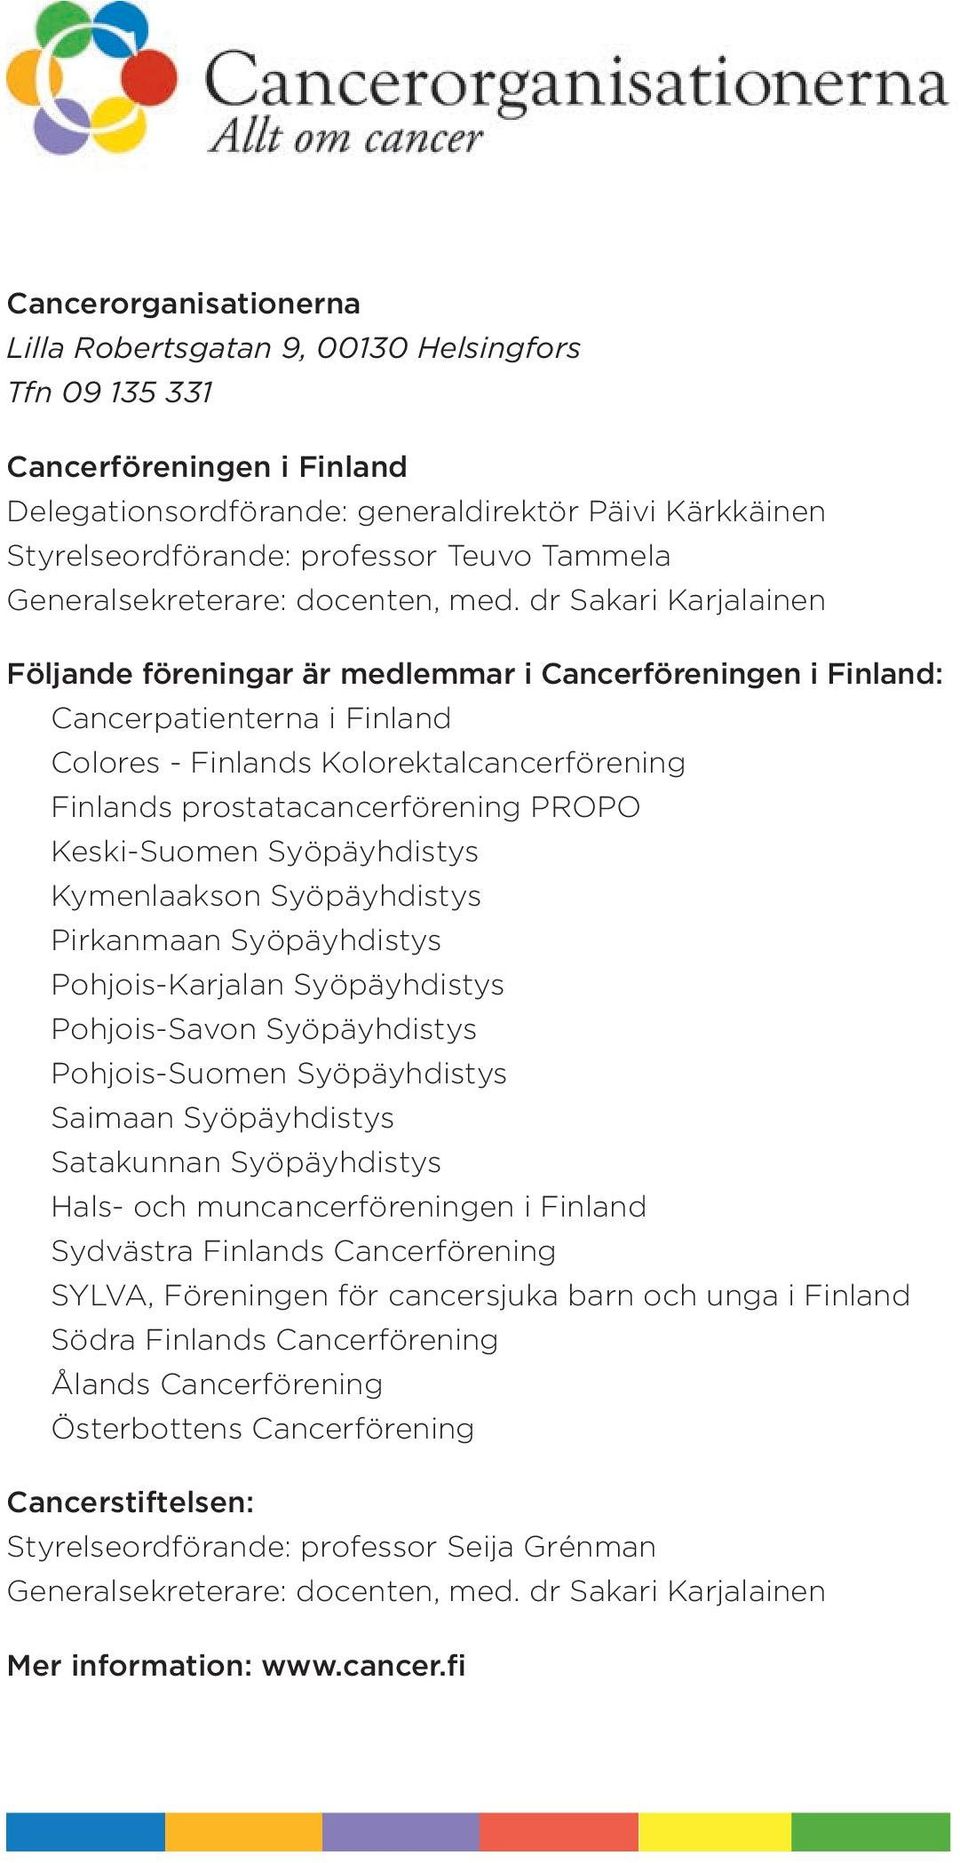 dr Sakari Karjalainen Följande föreningar är medlemmar i Cancerföreningen i Finland: Cancerpatienterna i Finland Colores - Finlands Kolorektalcancerförening Finlands prostatacancerförening PROPO